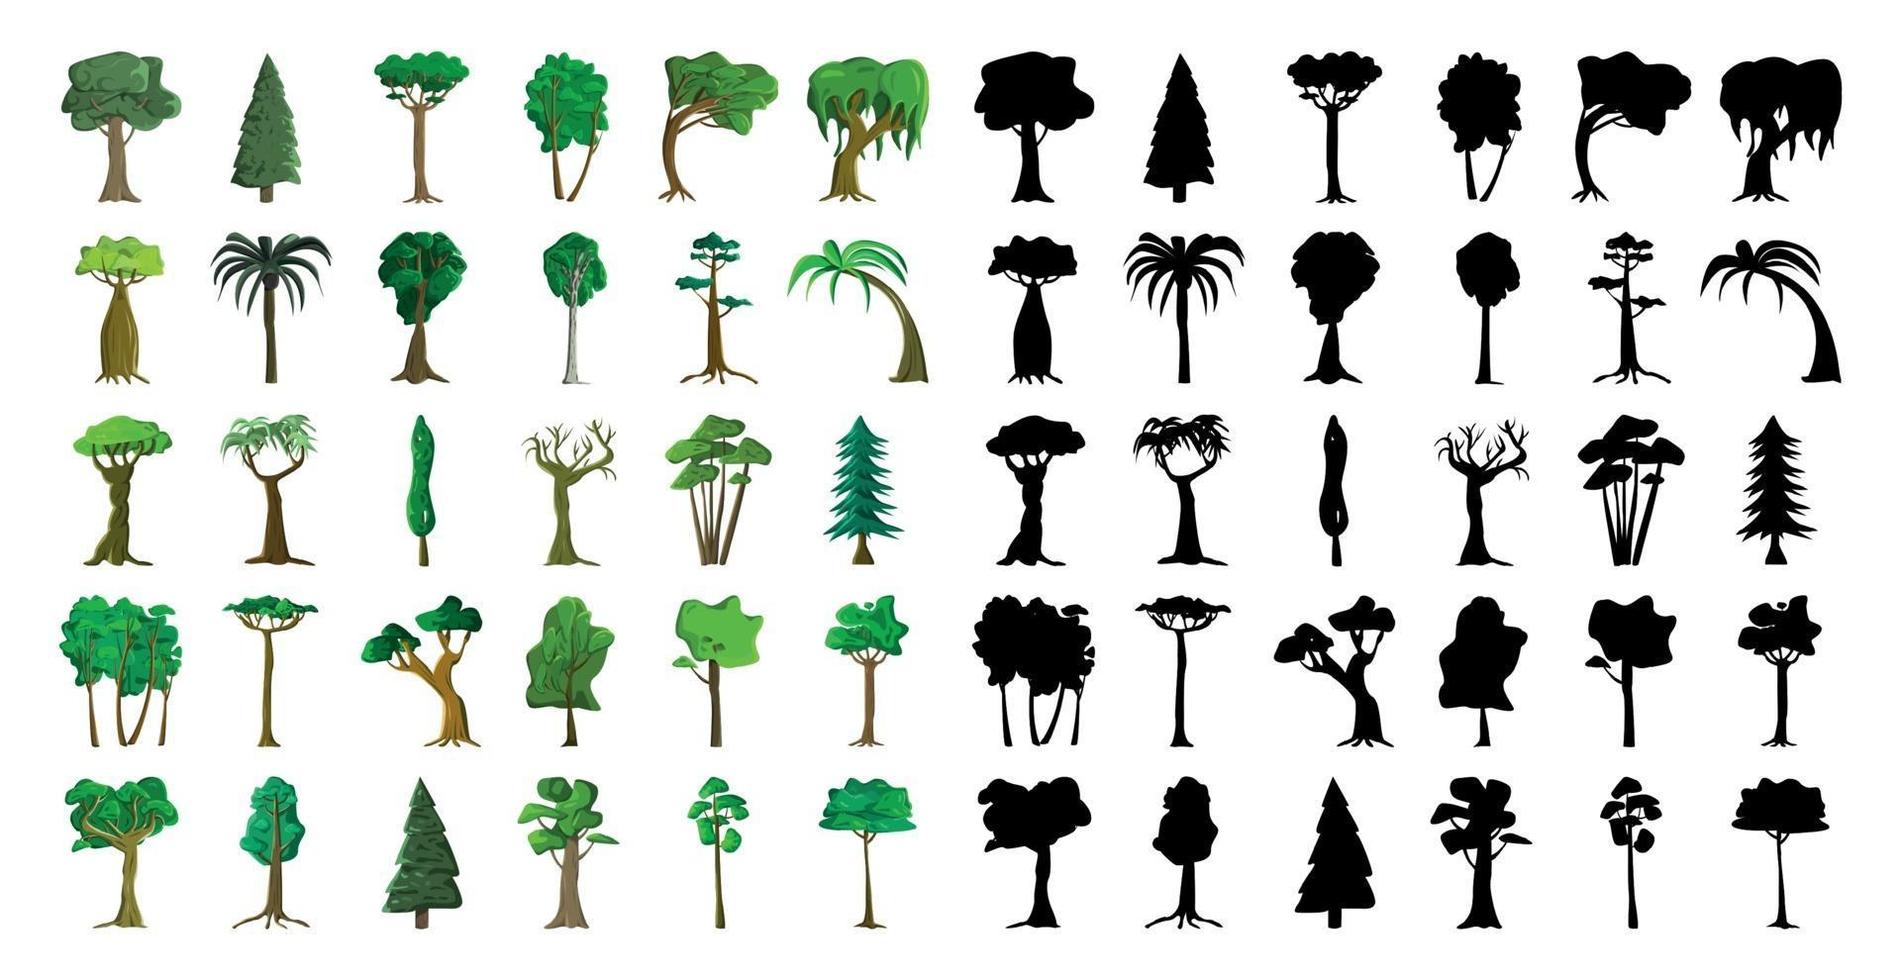 Seth schwarze Silhouetten und realistische Bäume vektor